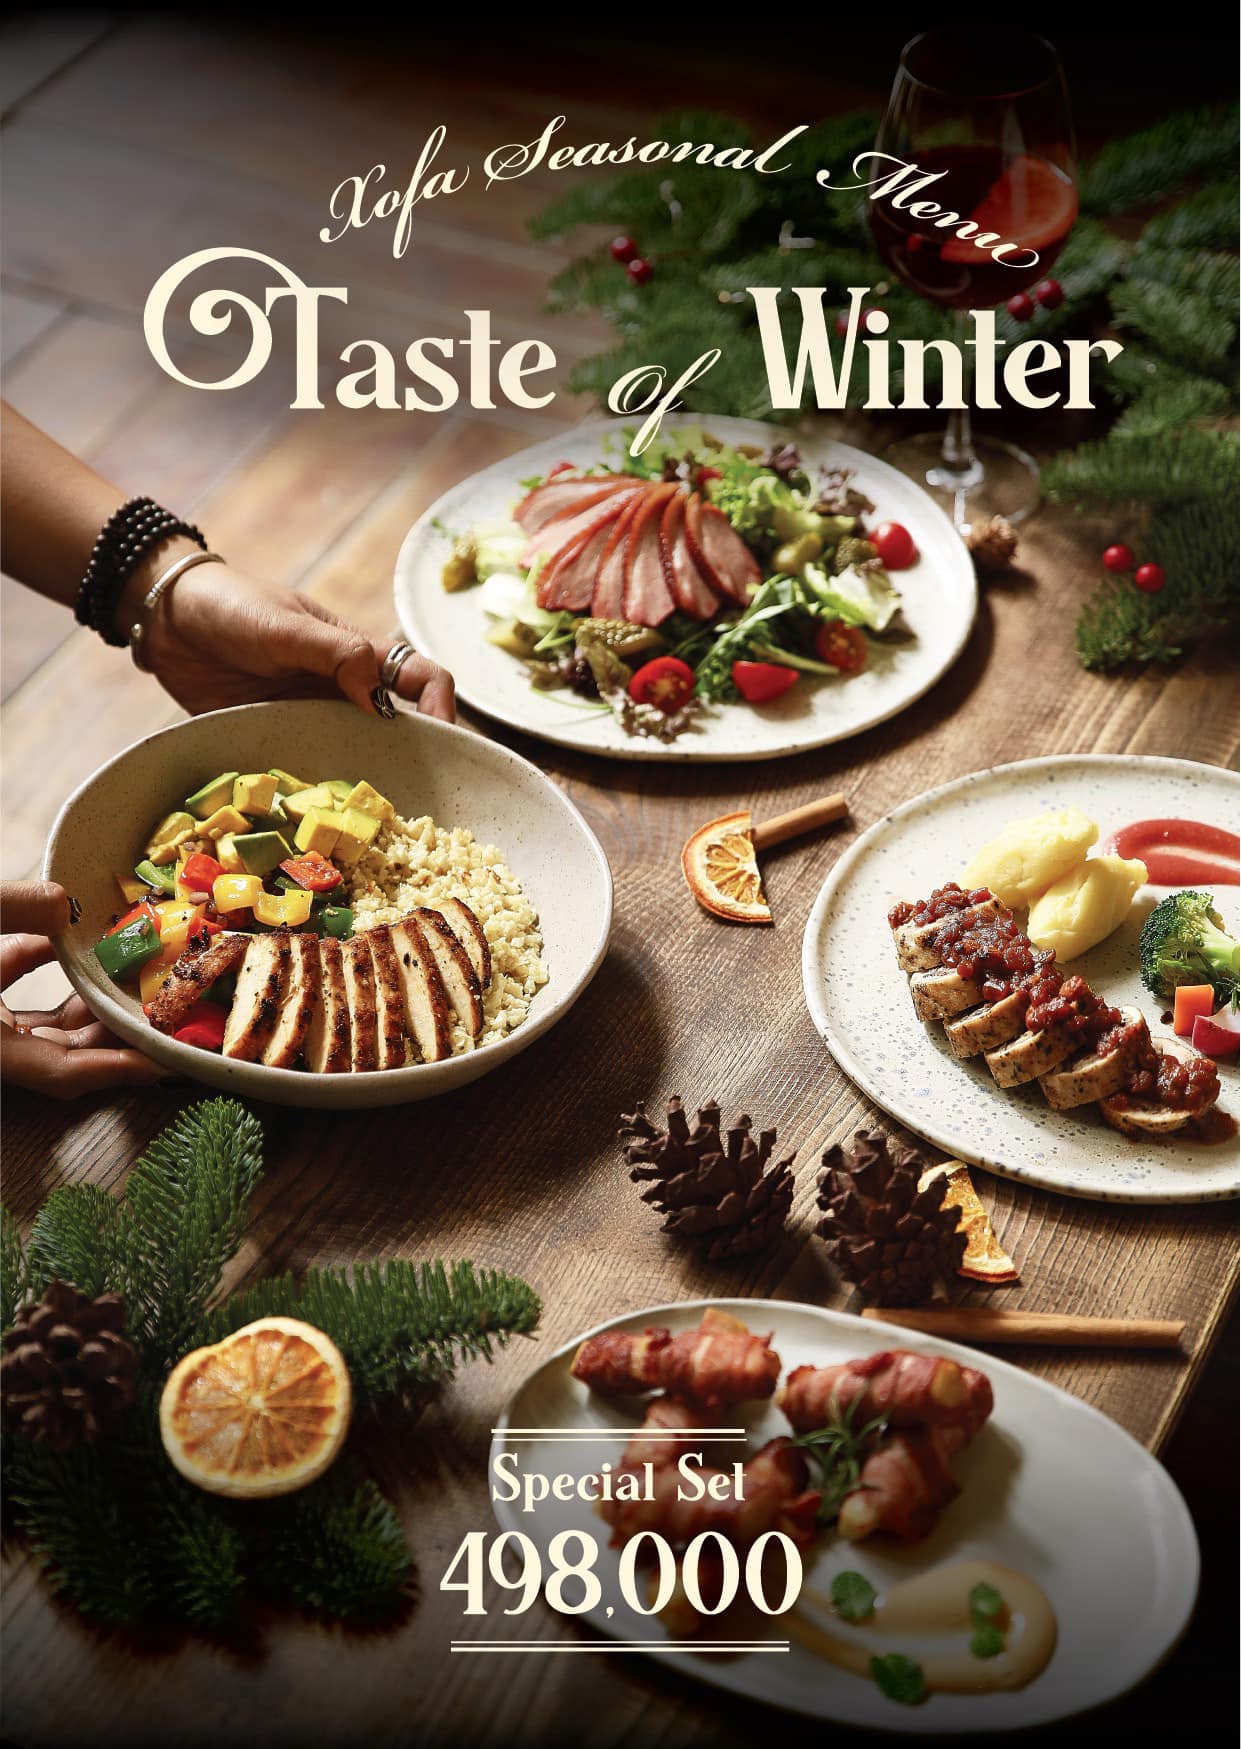 Có thể là hình ảnh về thực phẩm và văn bản cho biết 'Xofa Seasonal Henи Taste of Winter Special Set 498.000'